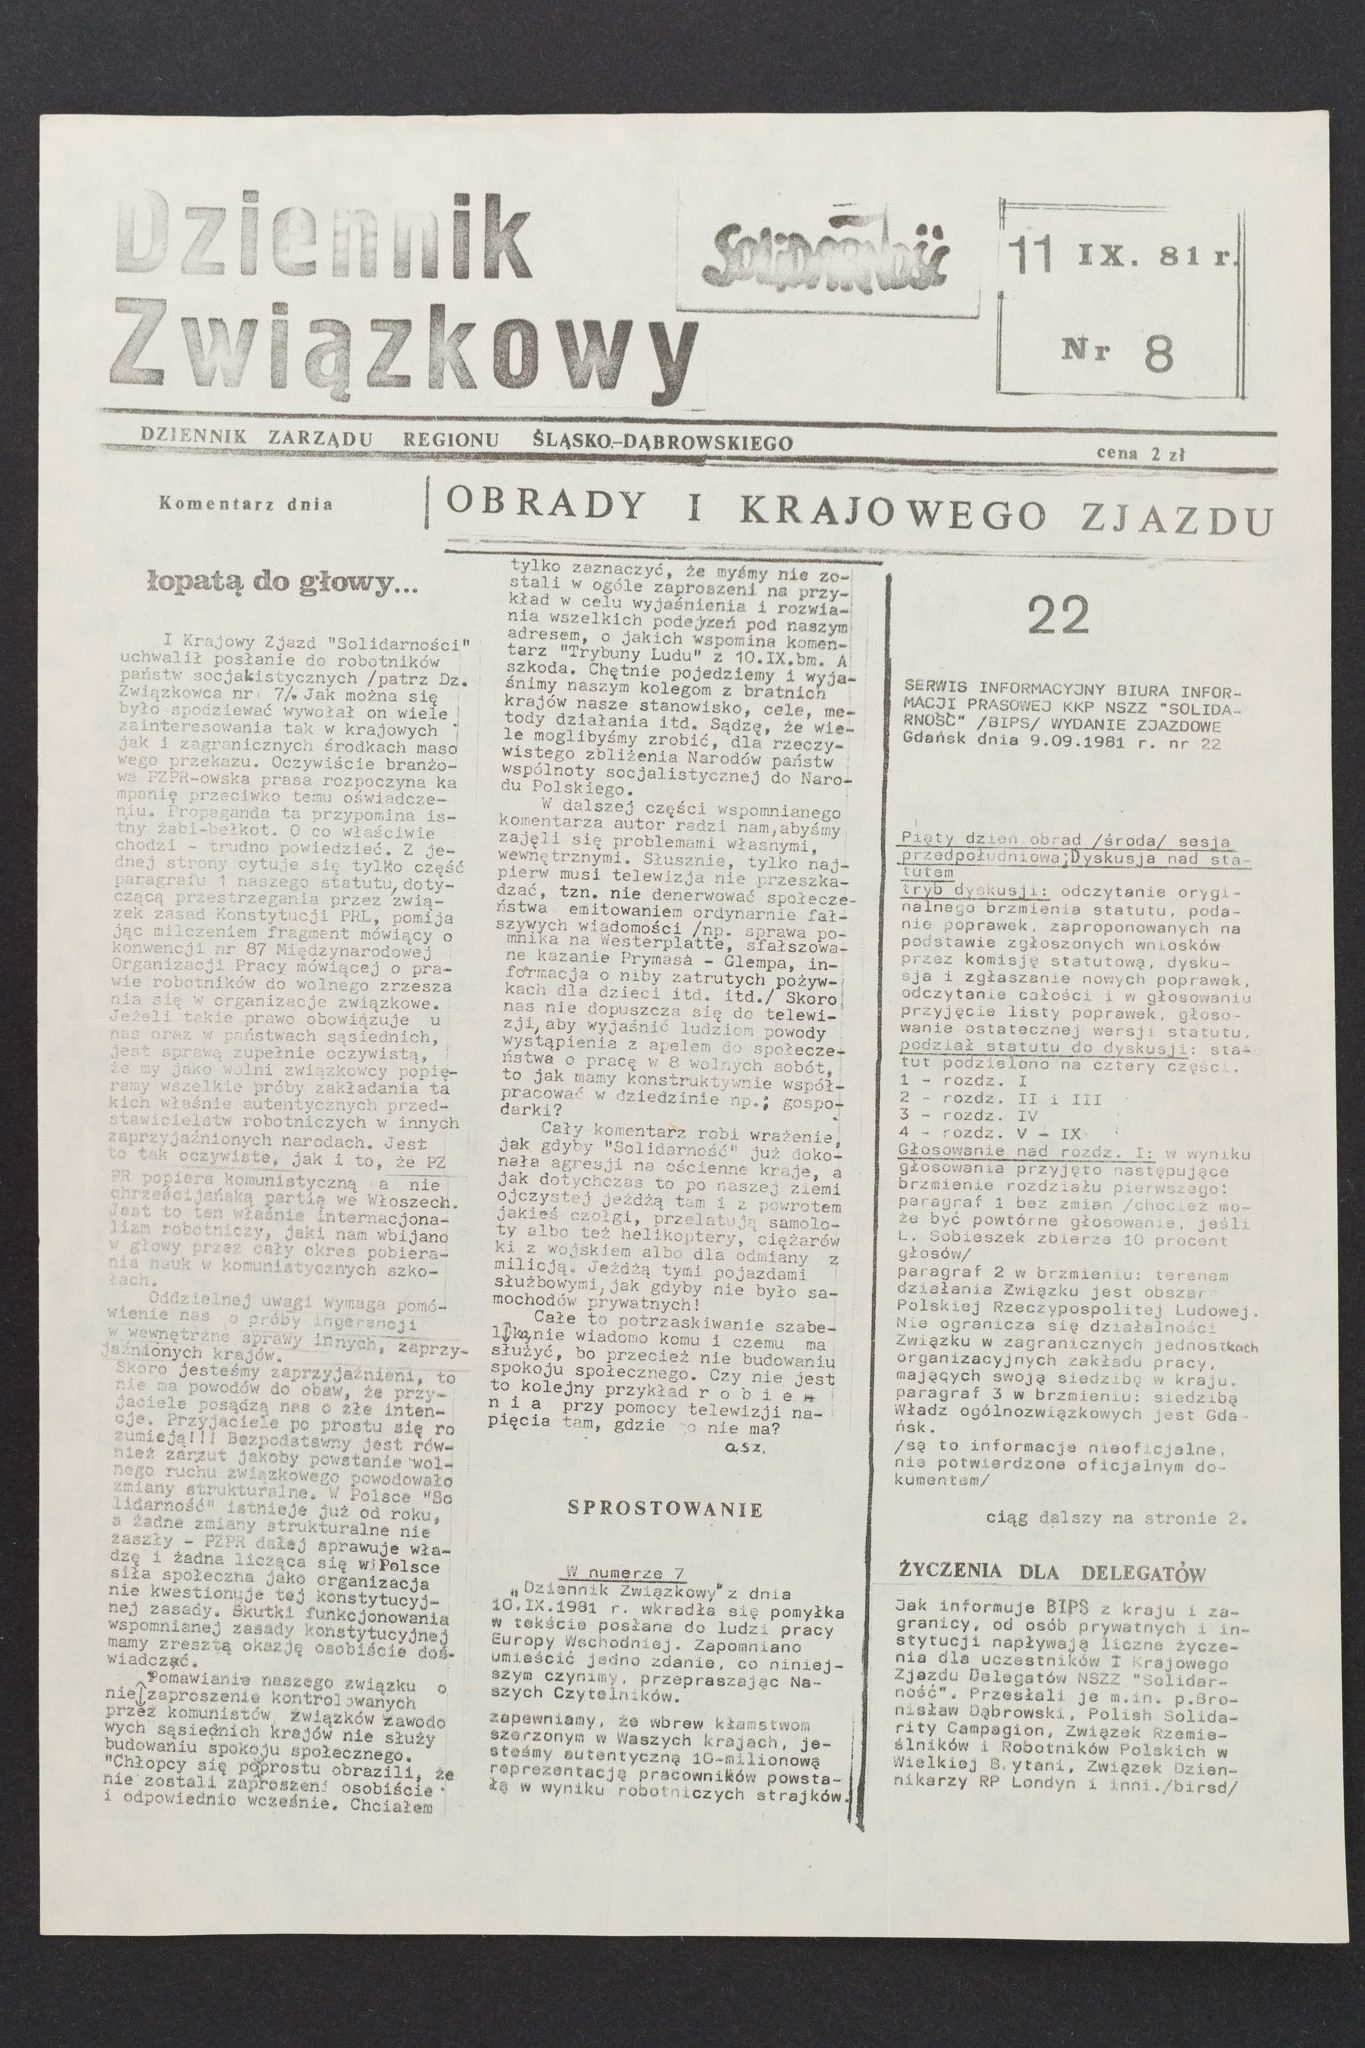 Dziennik związkowy nr 15 19.09.1981